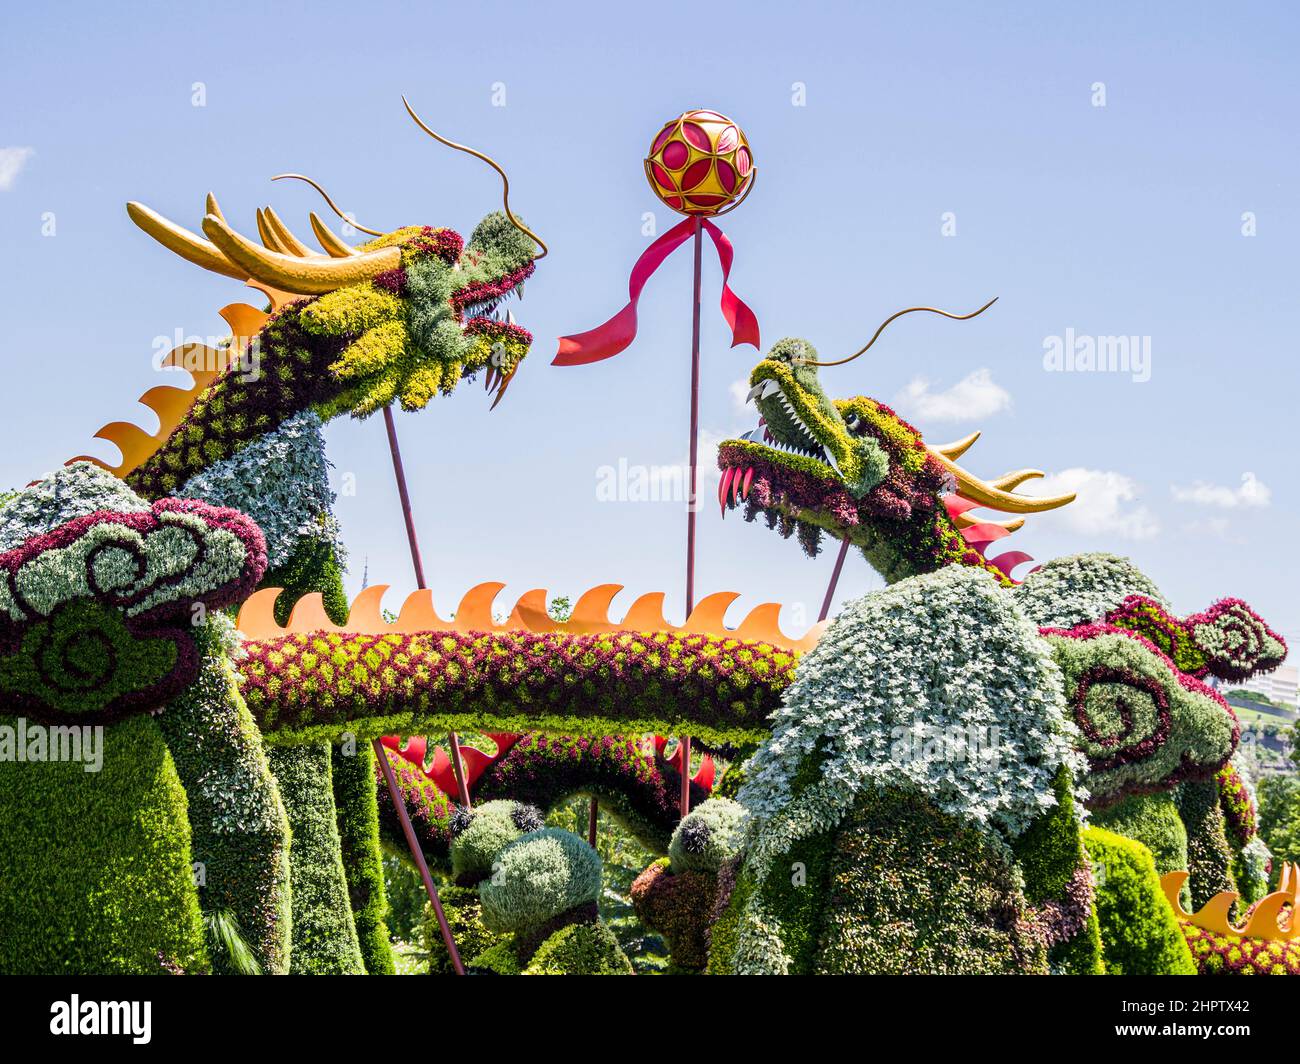 Escultura de plantas de dos dragones que luchan por una bola: Una escultura construida de plantas de varios colores representa dos criaturas con forma de dragón en forma de cuernos que viven por una bola o un palo. Parte de MosaiCanada que celebró el cumpleaños de Canadá en 150th. Foto de stock